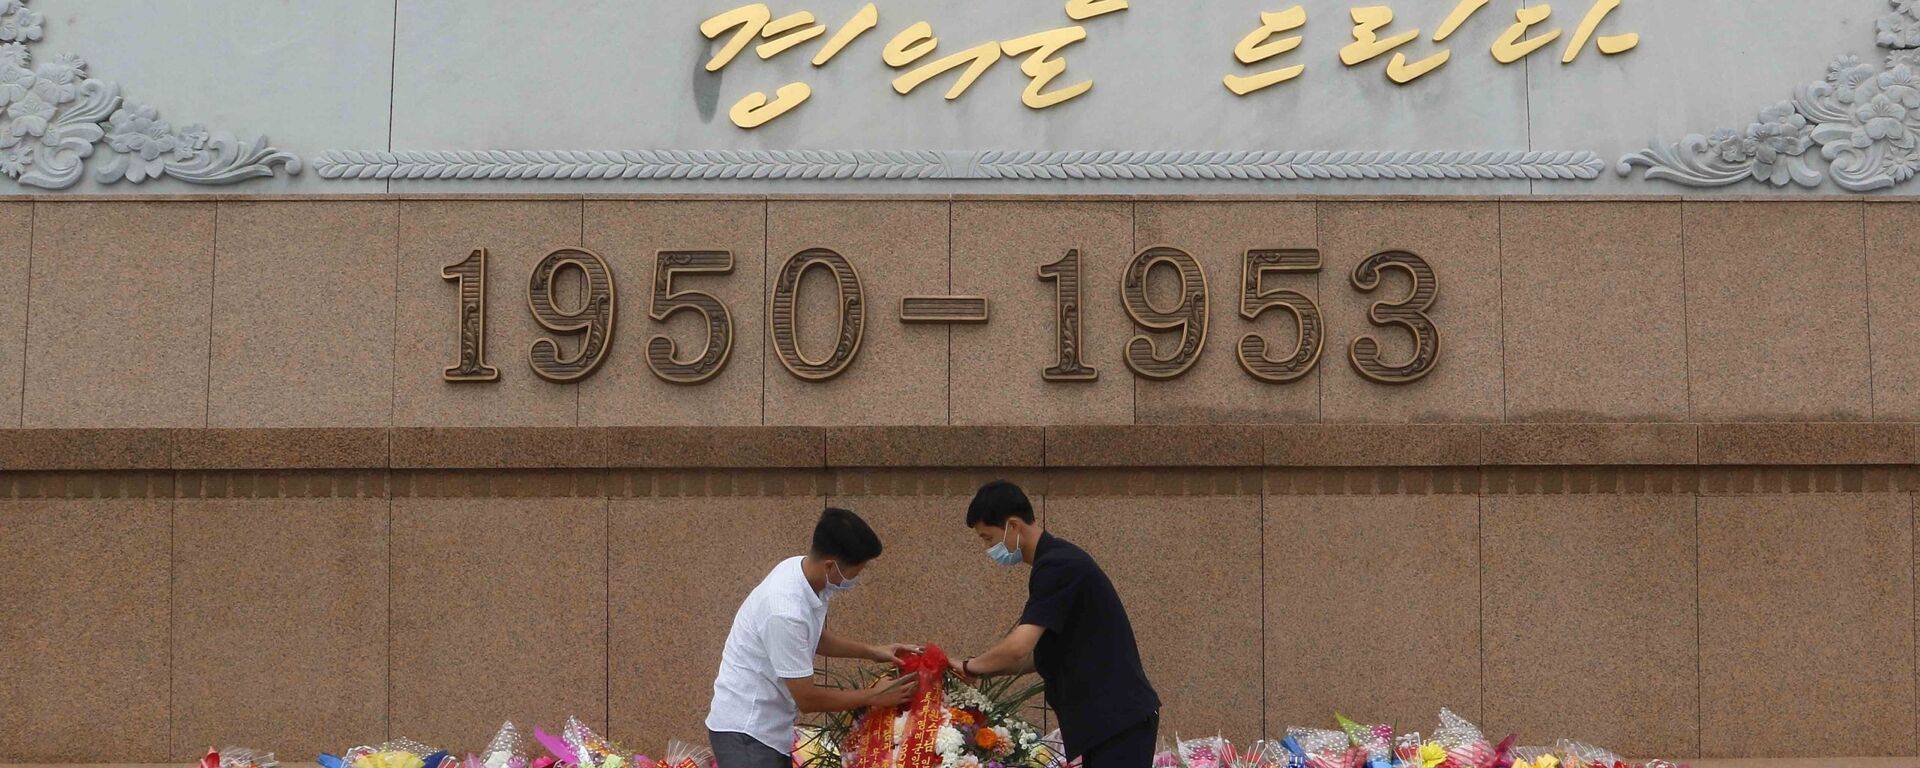 احتفالات كوريا الشمالية بالذكرى الـ67 لتوقيع معاهدة السلام التي وضعت نهاية للحرب ضد جارتها كوريا الجنوبية، 27 يوليو 2020 - سبوتنيك عربي, 1920, 15.06.2021